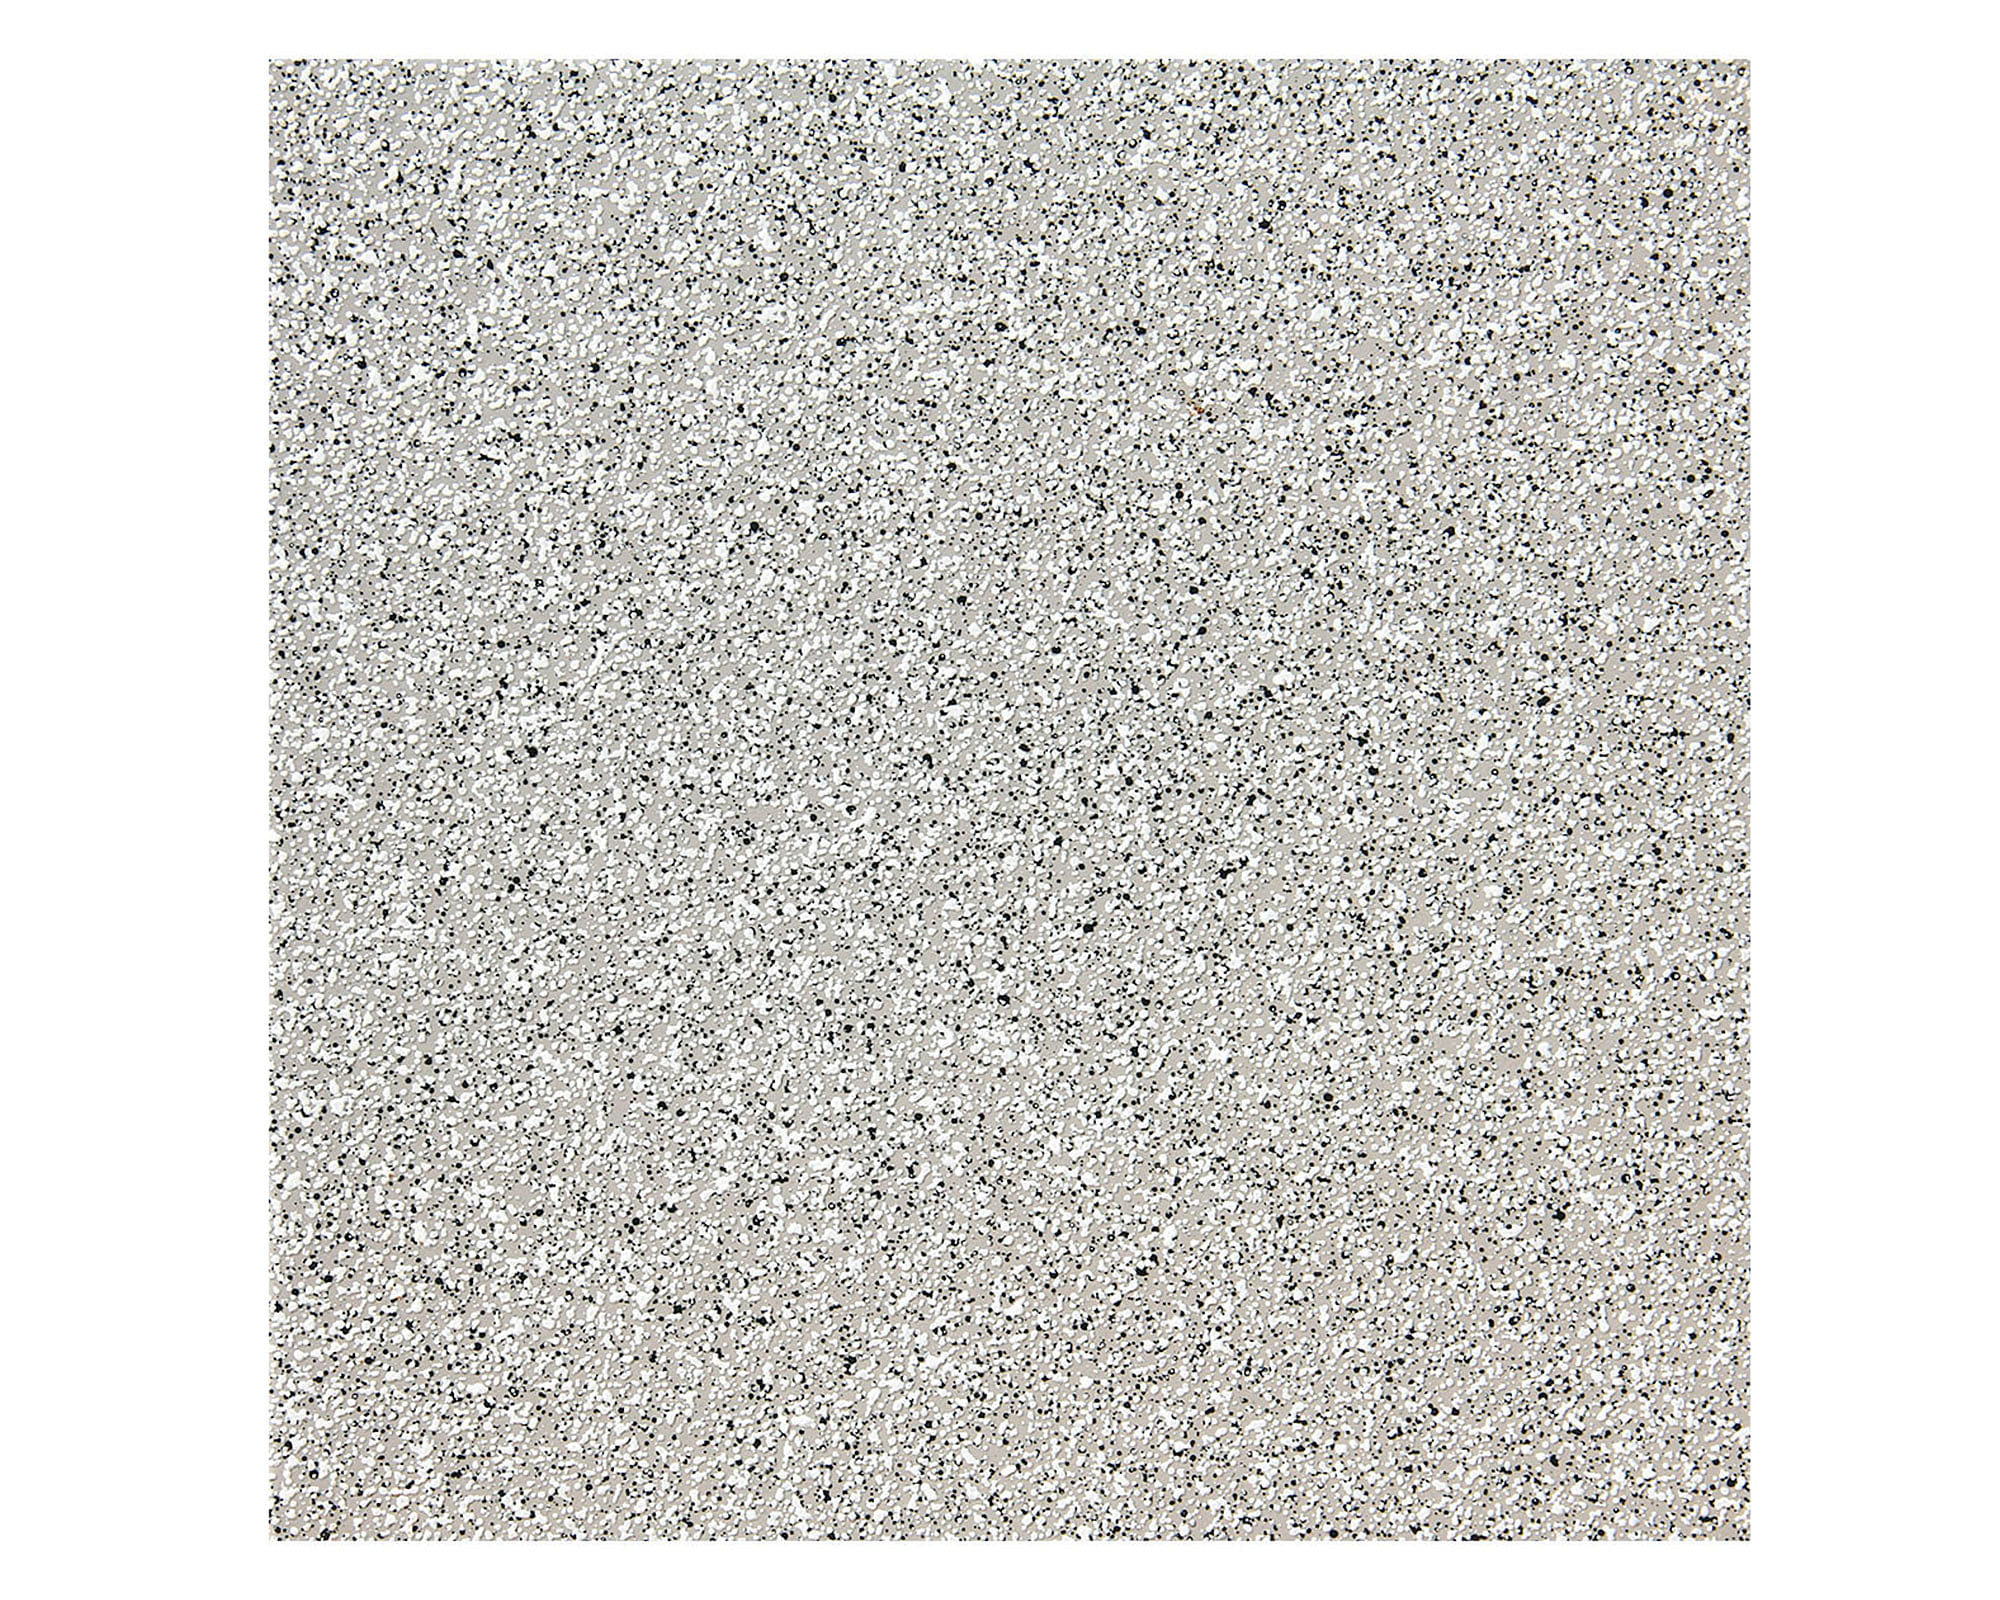 Cerámica piso muro 30x30 cm piedra gris 2,34 m2 Celima